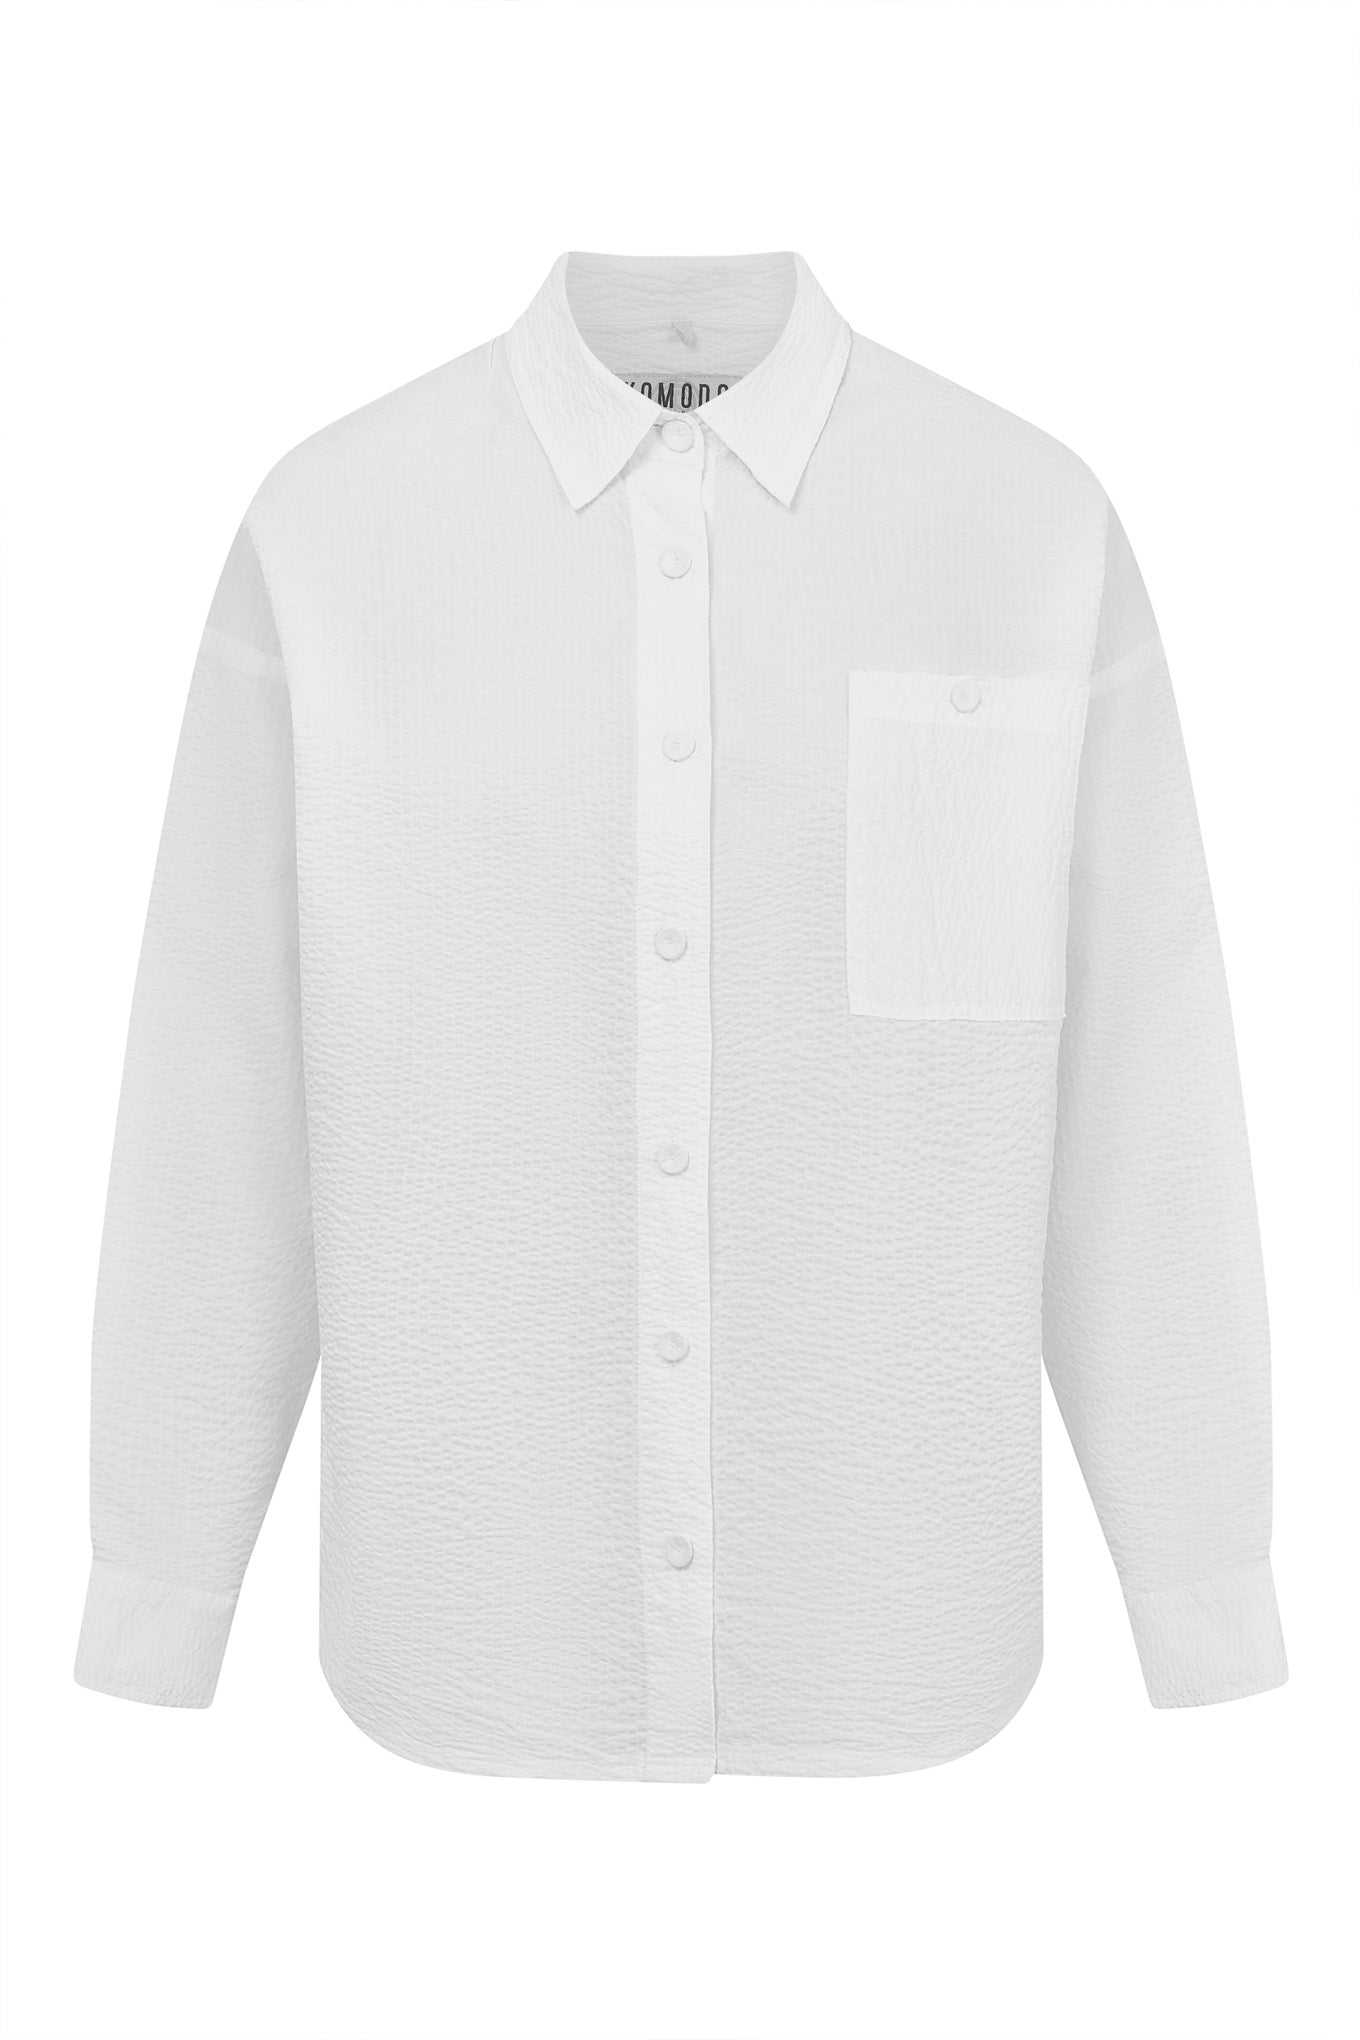 HANAKO Organic Cotton Shirt - White